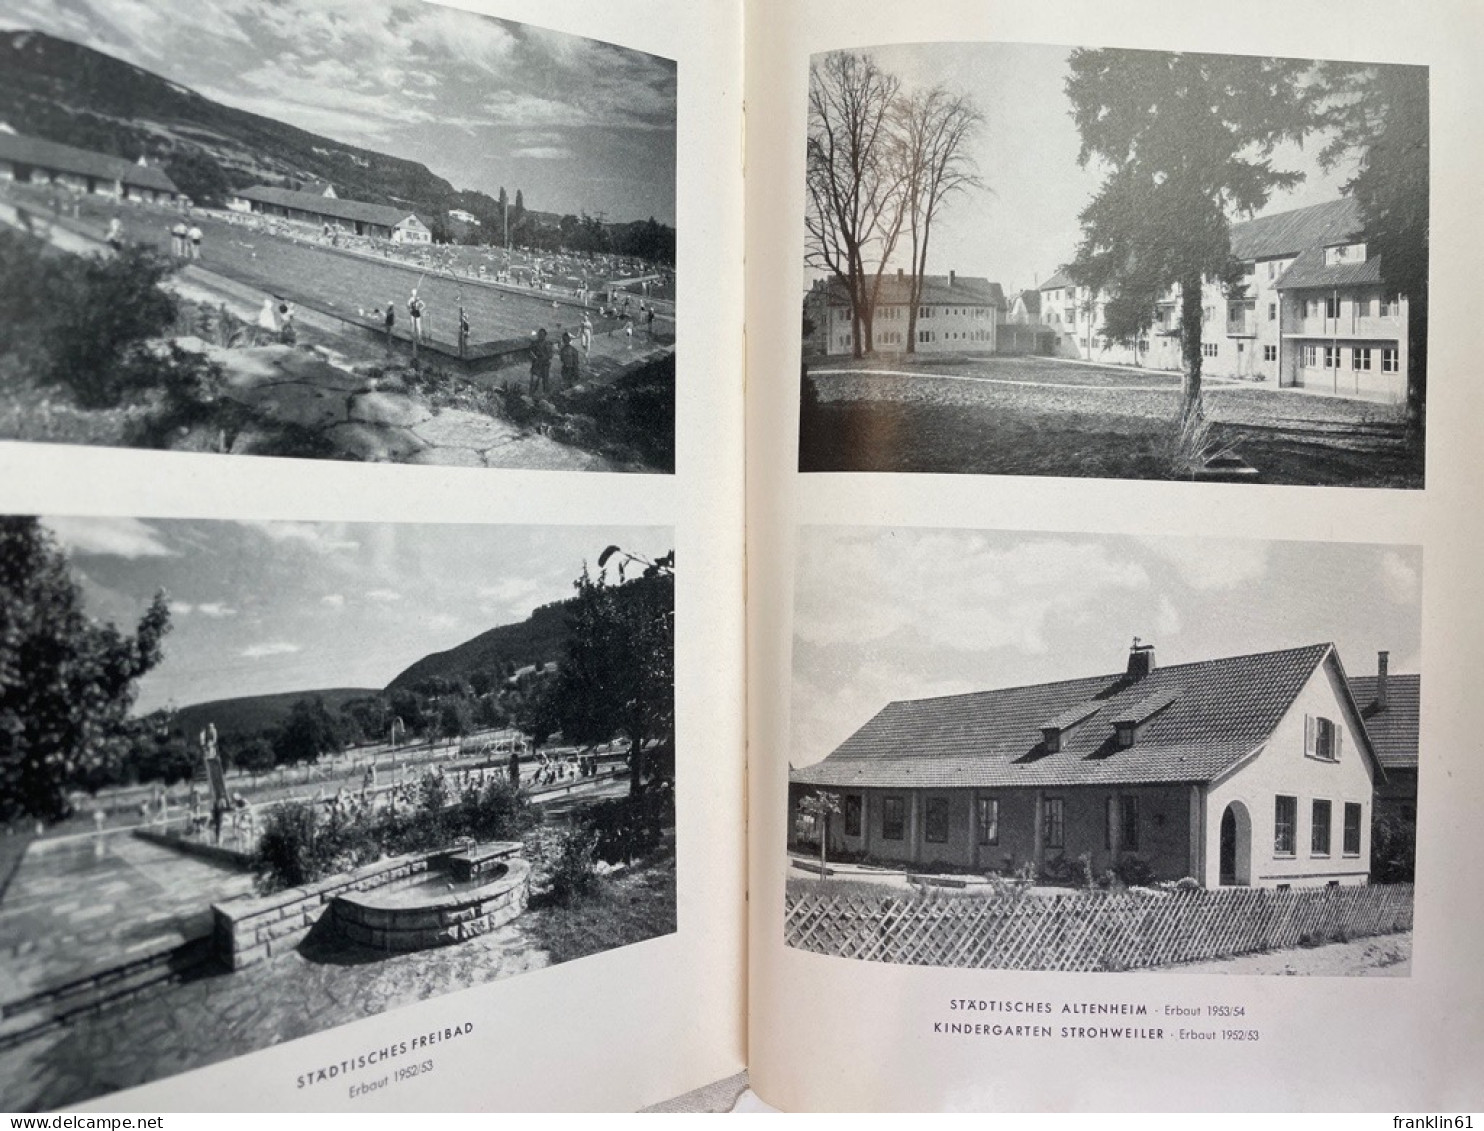 Adreßbuch der Stadt Pfullingen 1954.